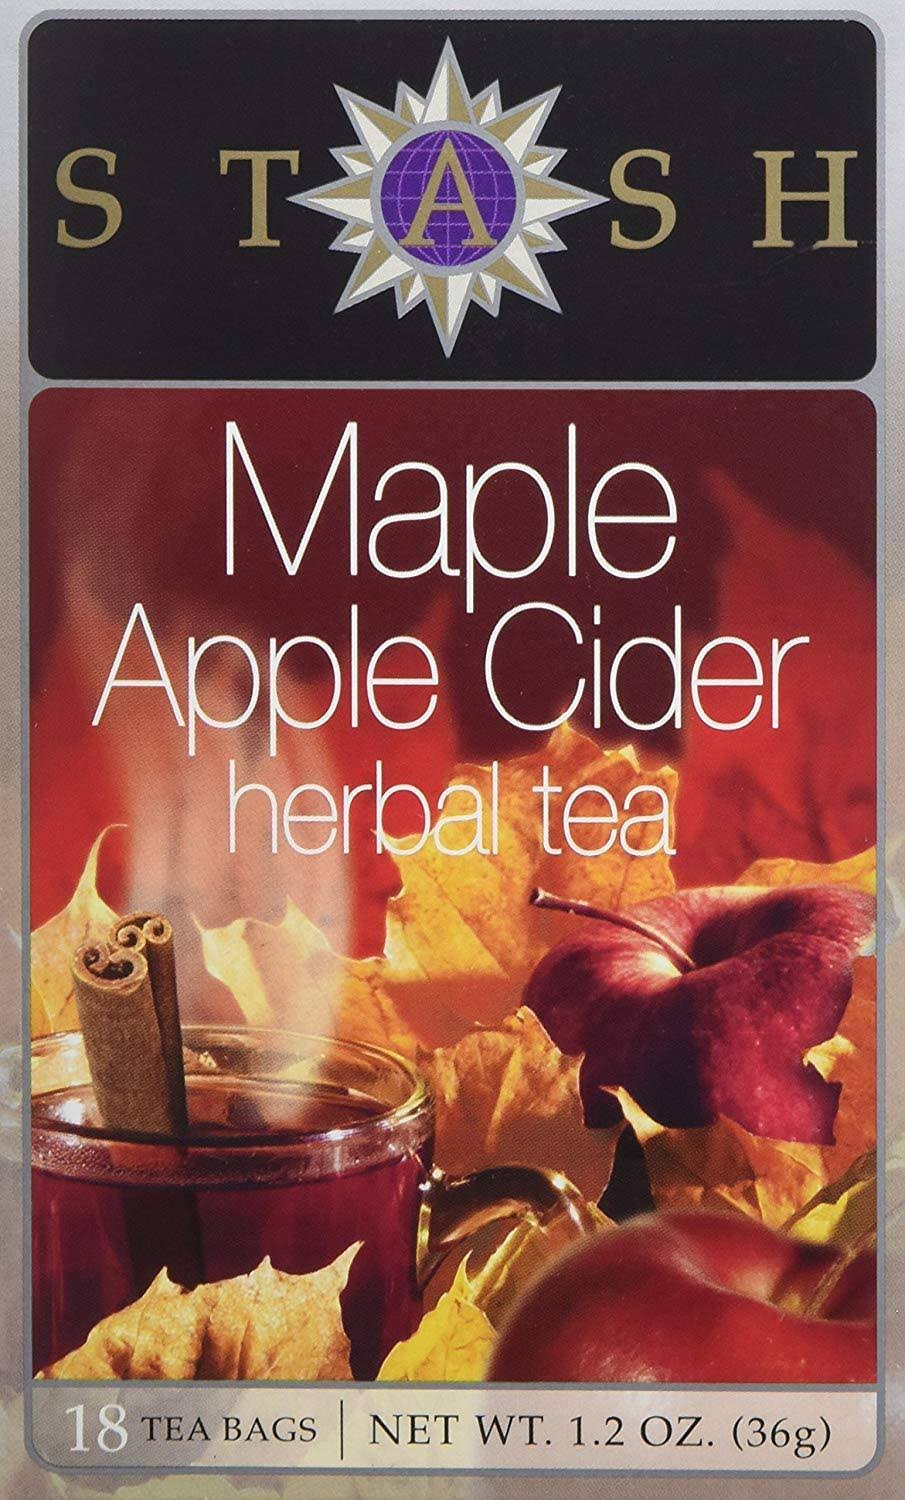 Stash Herbal Tea, Caffeine-Free, Maple Apple Cider, Tea Bags - 18 bags, 36 g